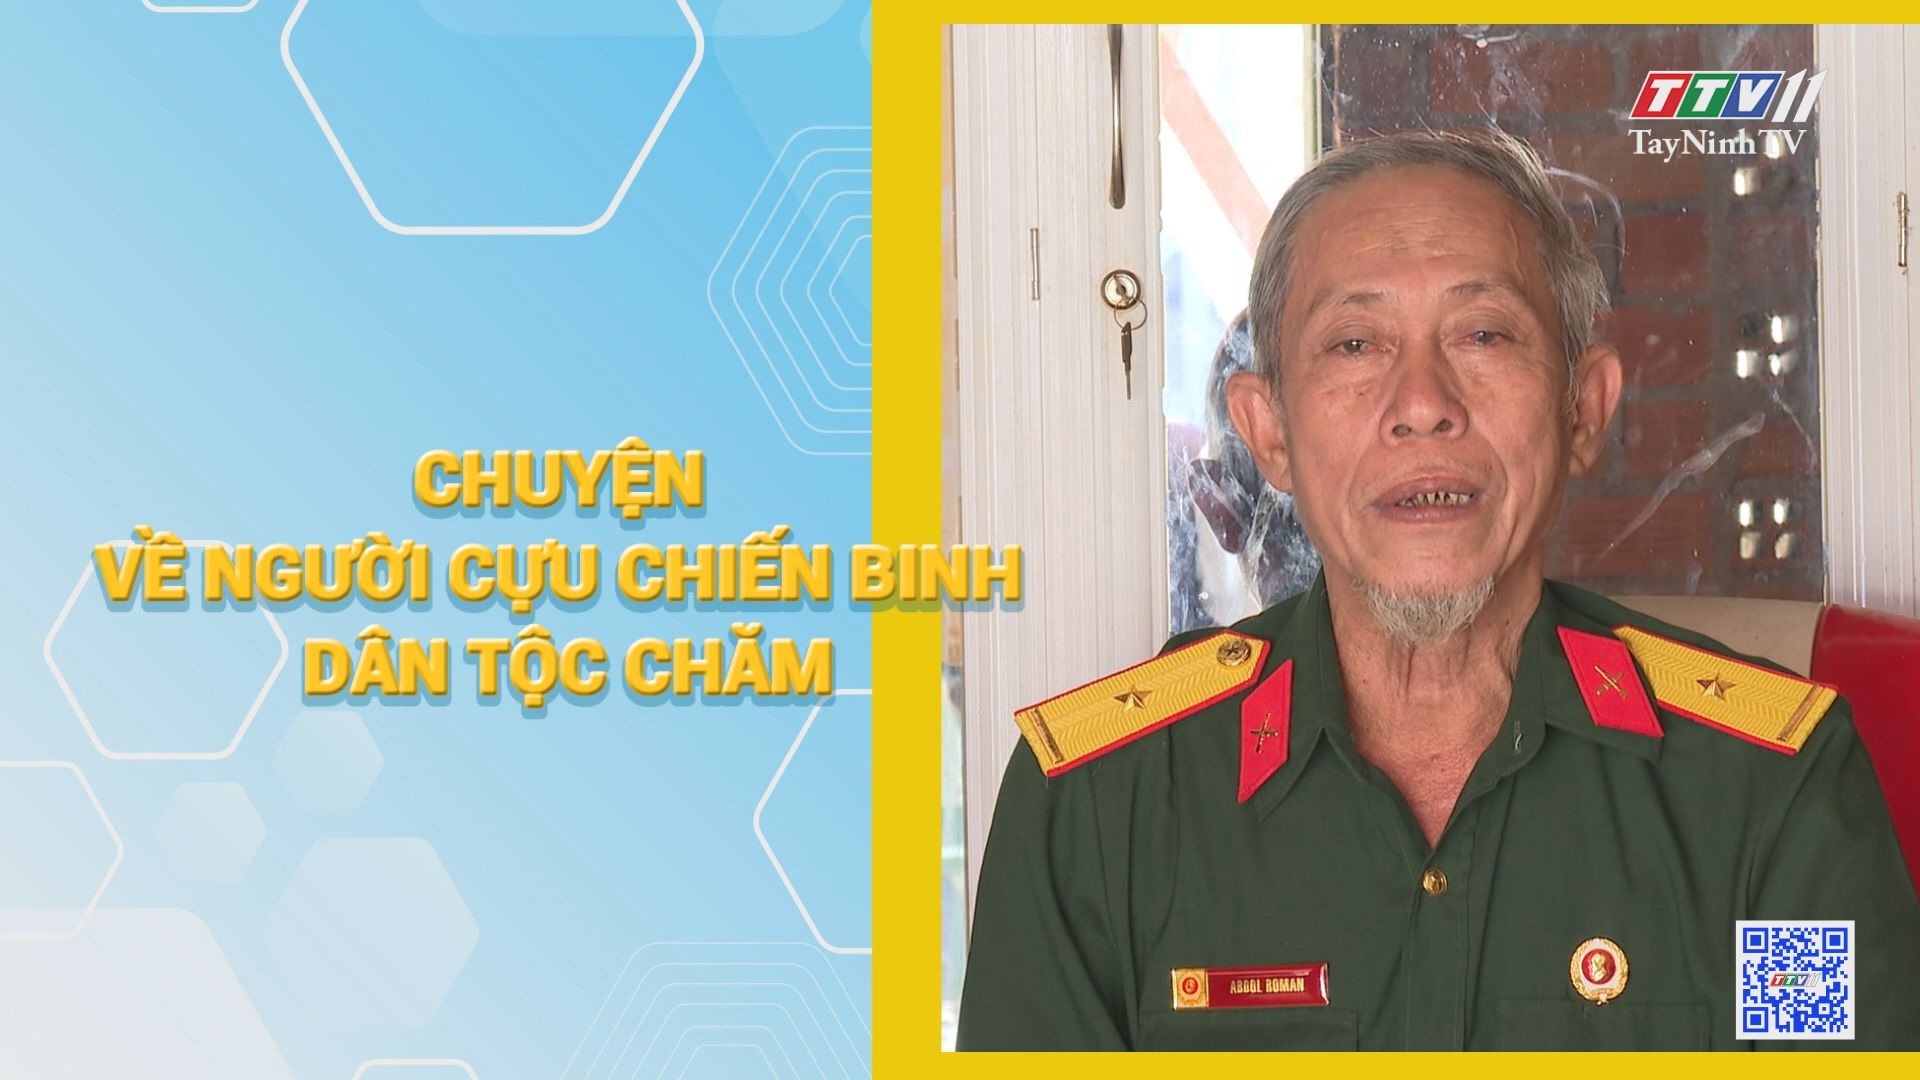 Chuyện về người cựu chiến binh dân tộc Chăm | HỘI CỰU CHIẾN BINH TỈNH TÂY NINH | TayNinhTV